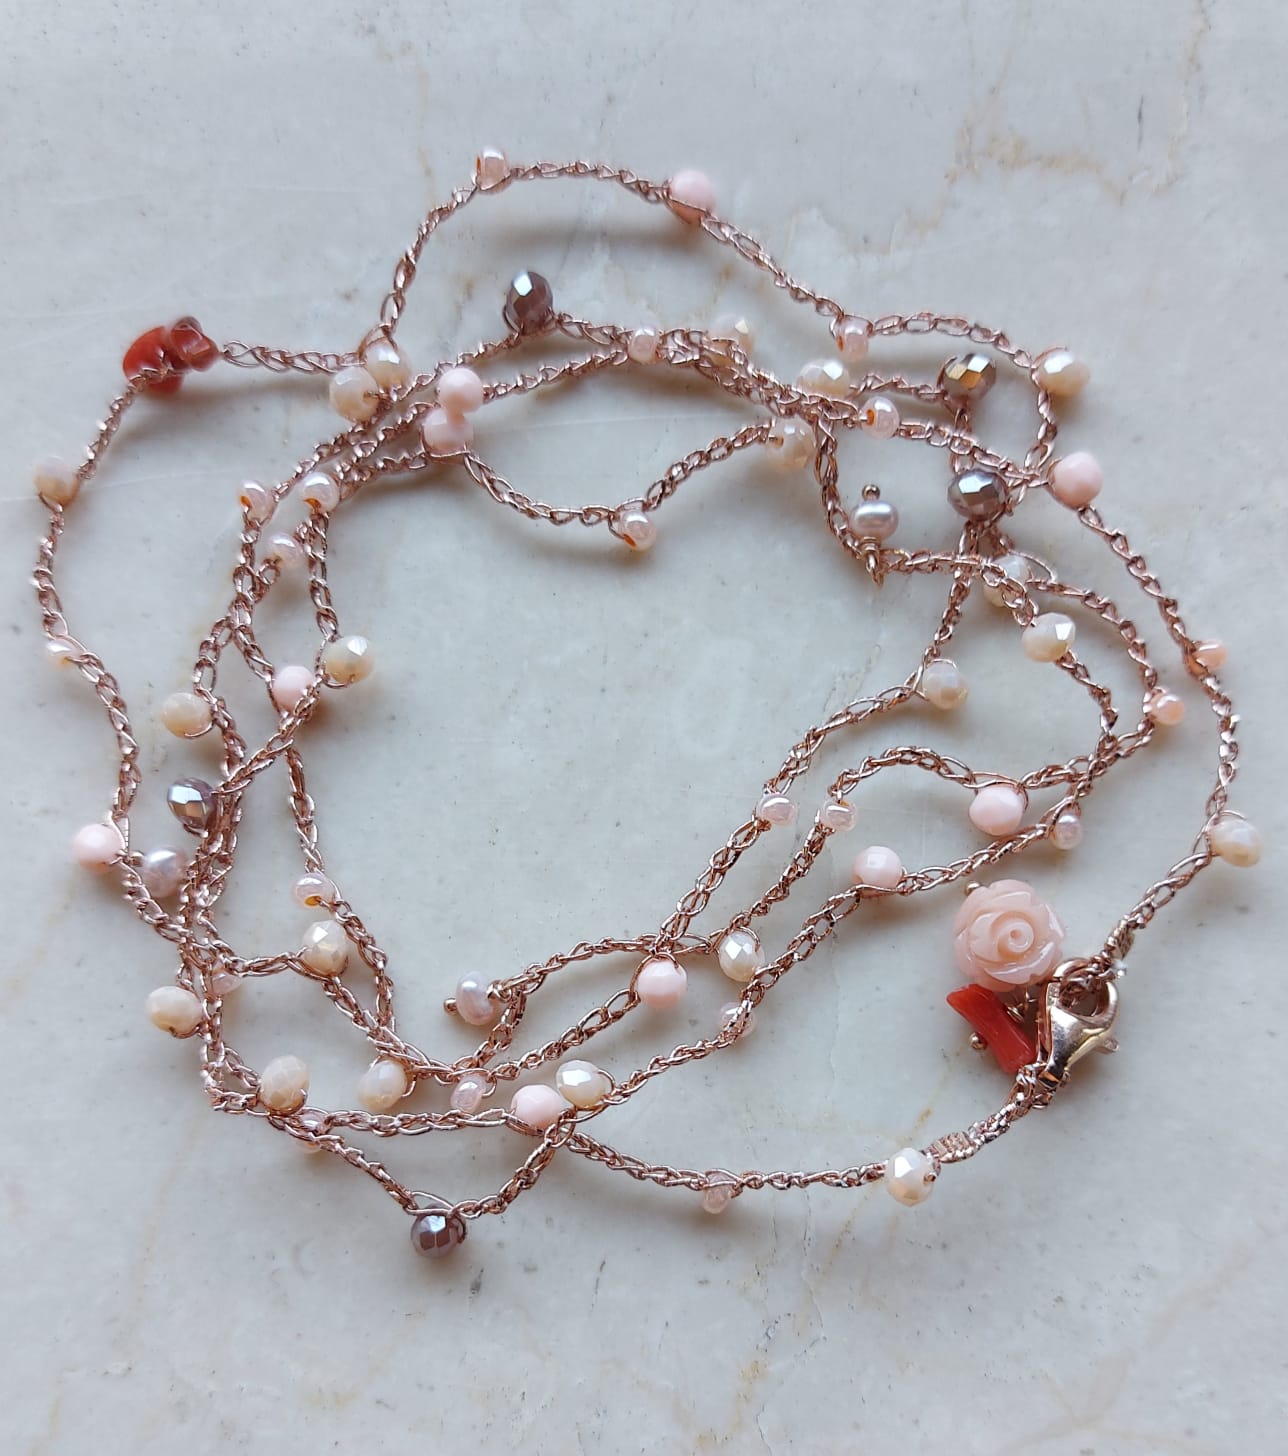 Cavigliera o collana o bracciale in macramè a tre fili con cristalli rosa chiaro, cipria e corallini rossi